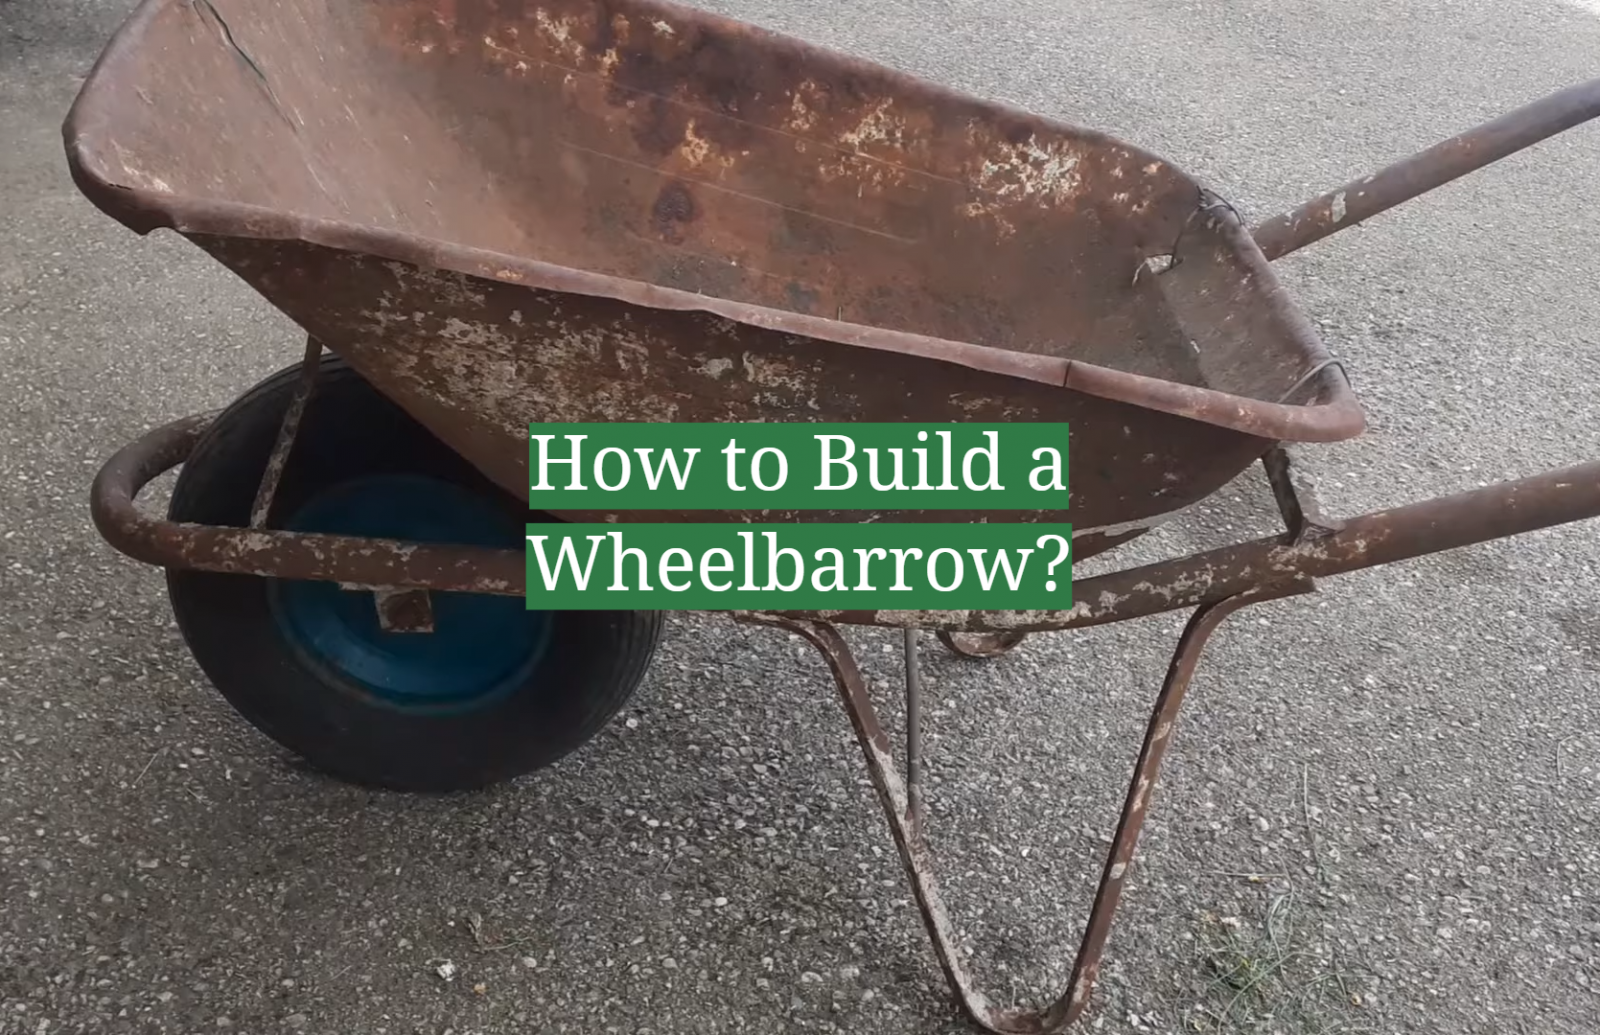 How to Build a Wheelbarrow?